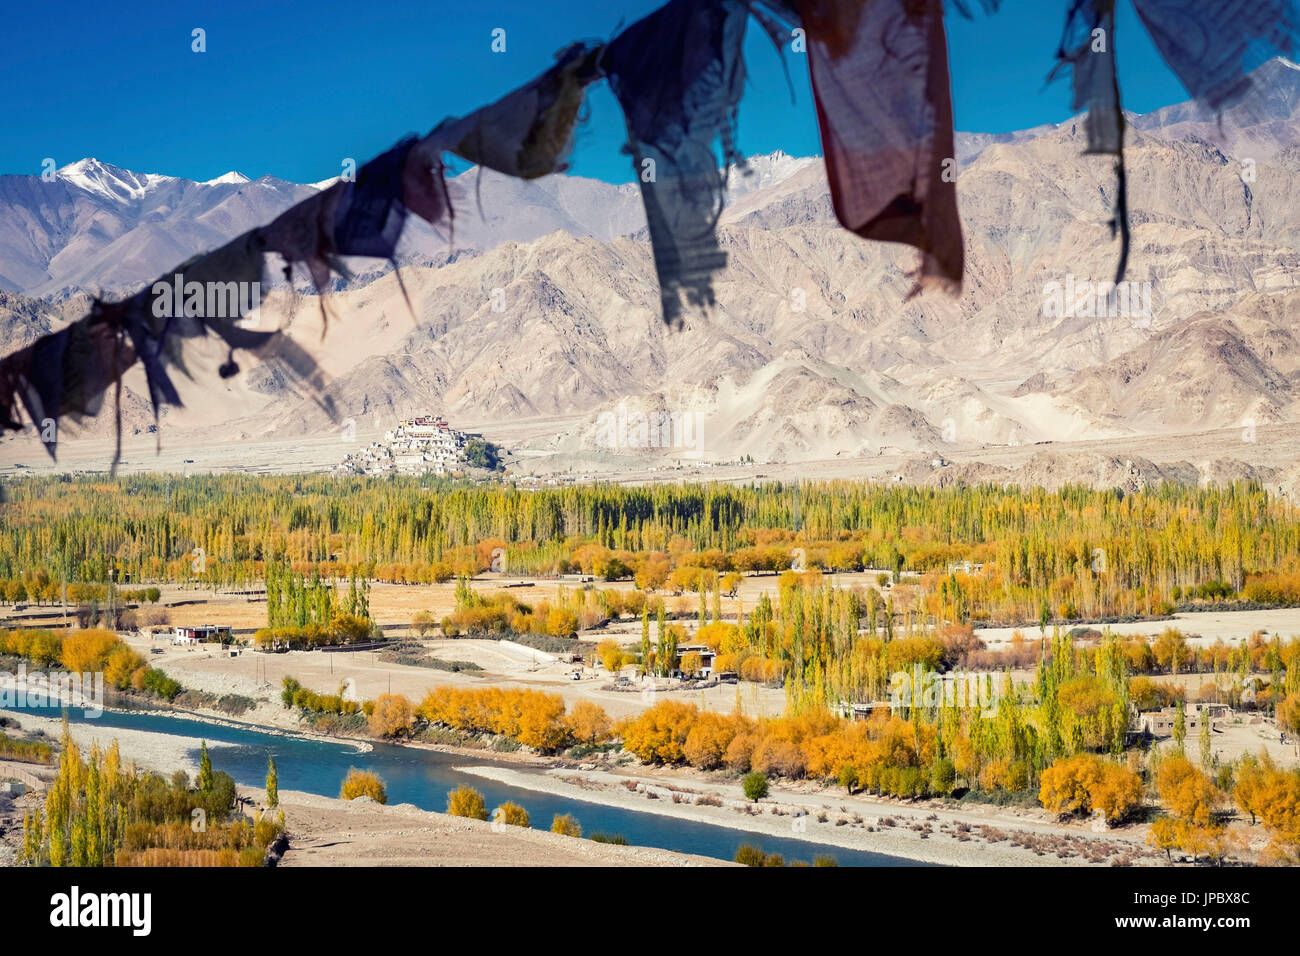 Monastère de Stakna, Ladakh, Inde du Nord, en Asie. Avec vue sur la rivière Indus. Banque D'Images